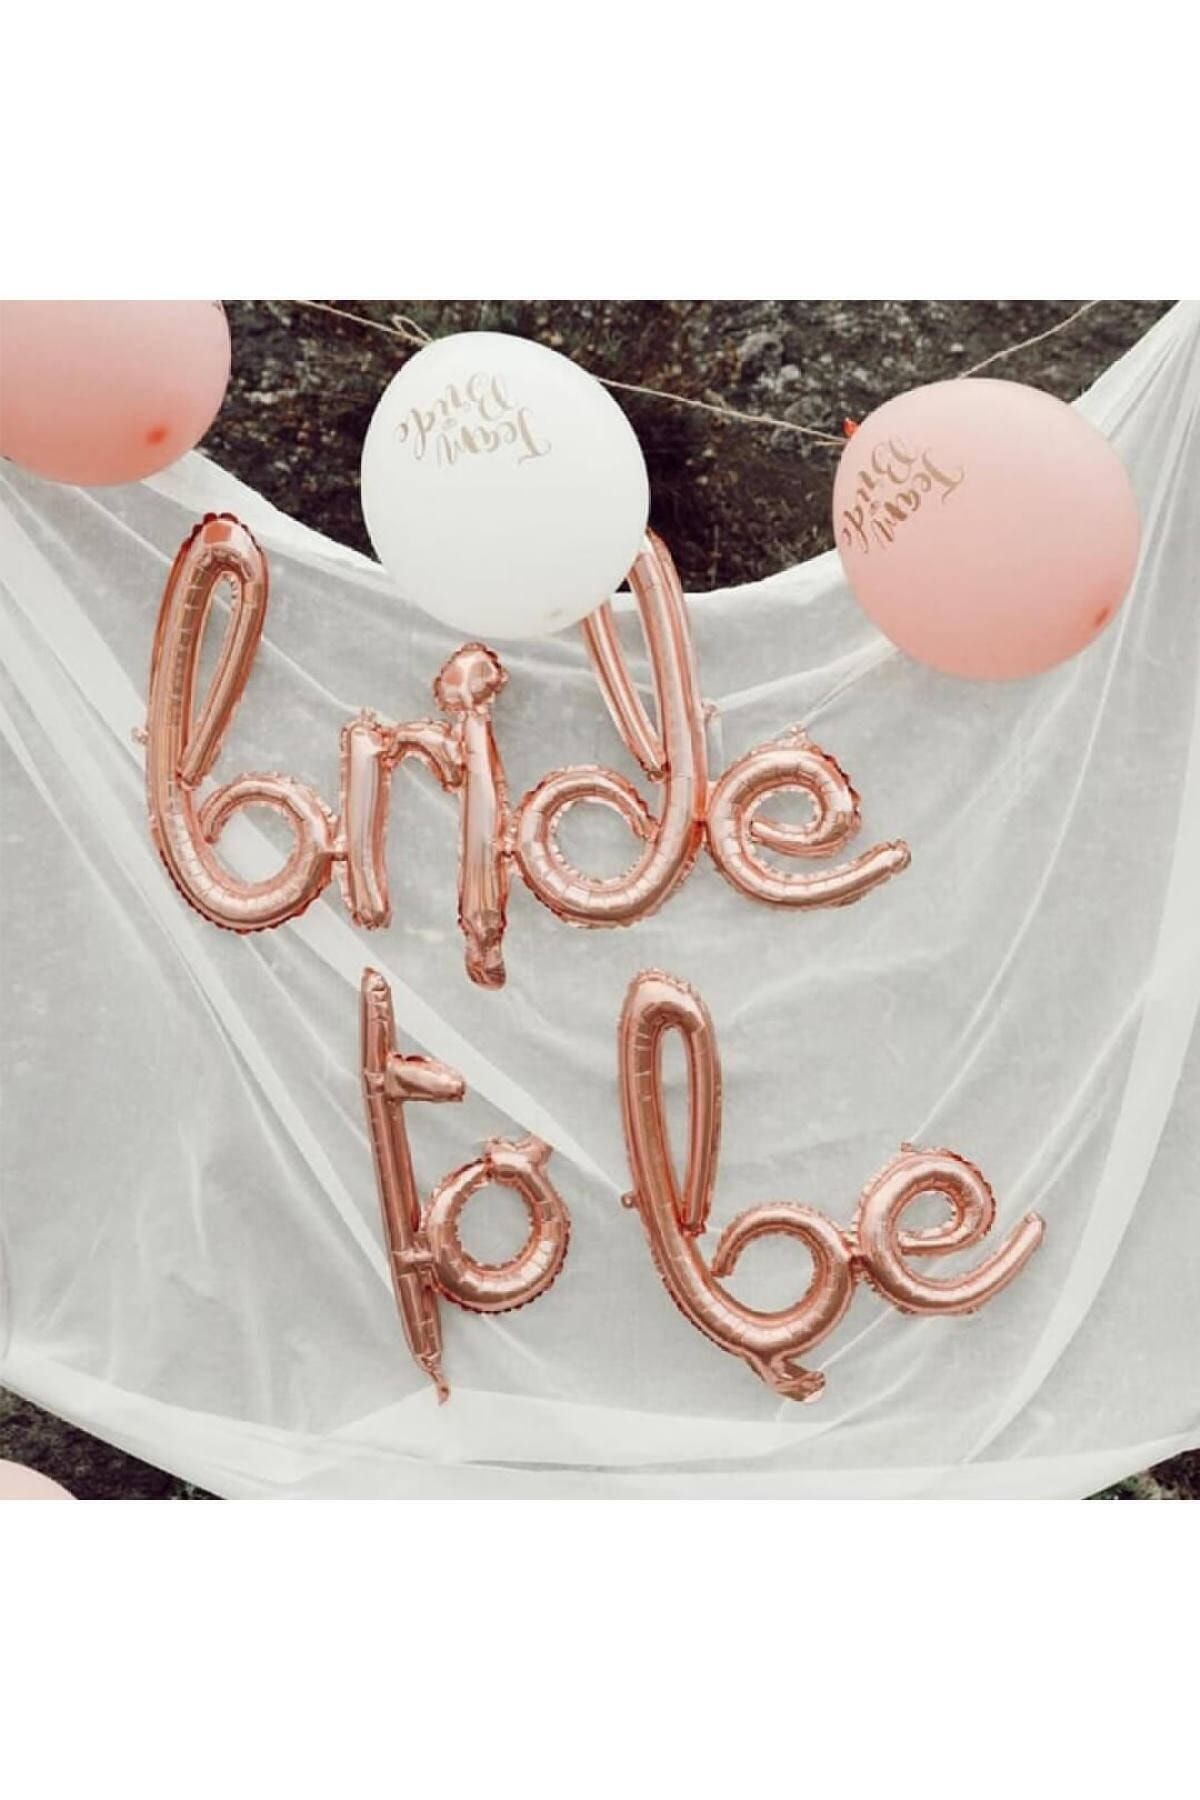 Huzur Party Store Bride To Be Yazılı El Yazısı Folyo Rose Gold Renkli Balon Bekarlığa Veda Partisi Büyük Balon Seti